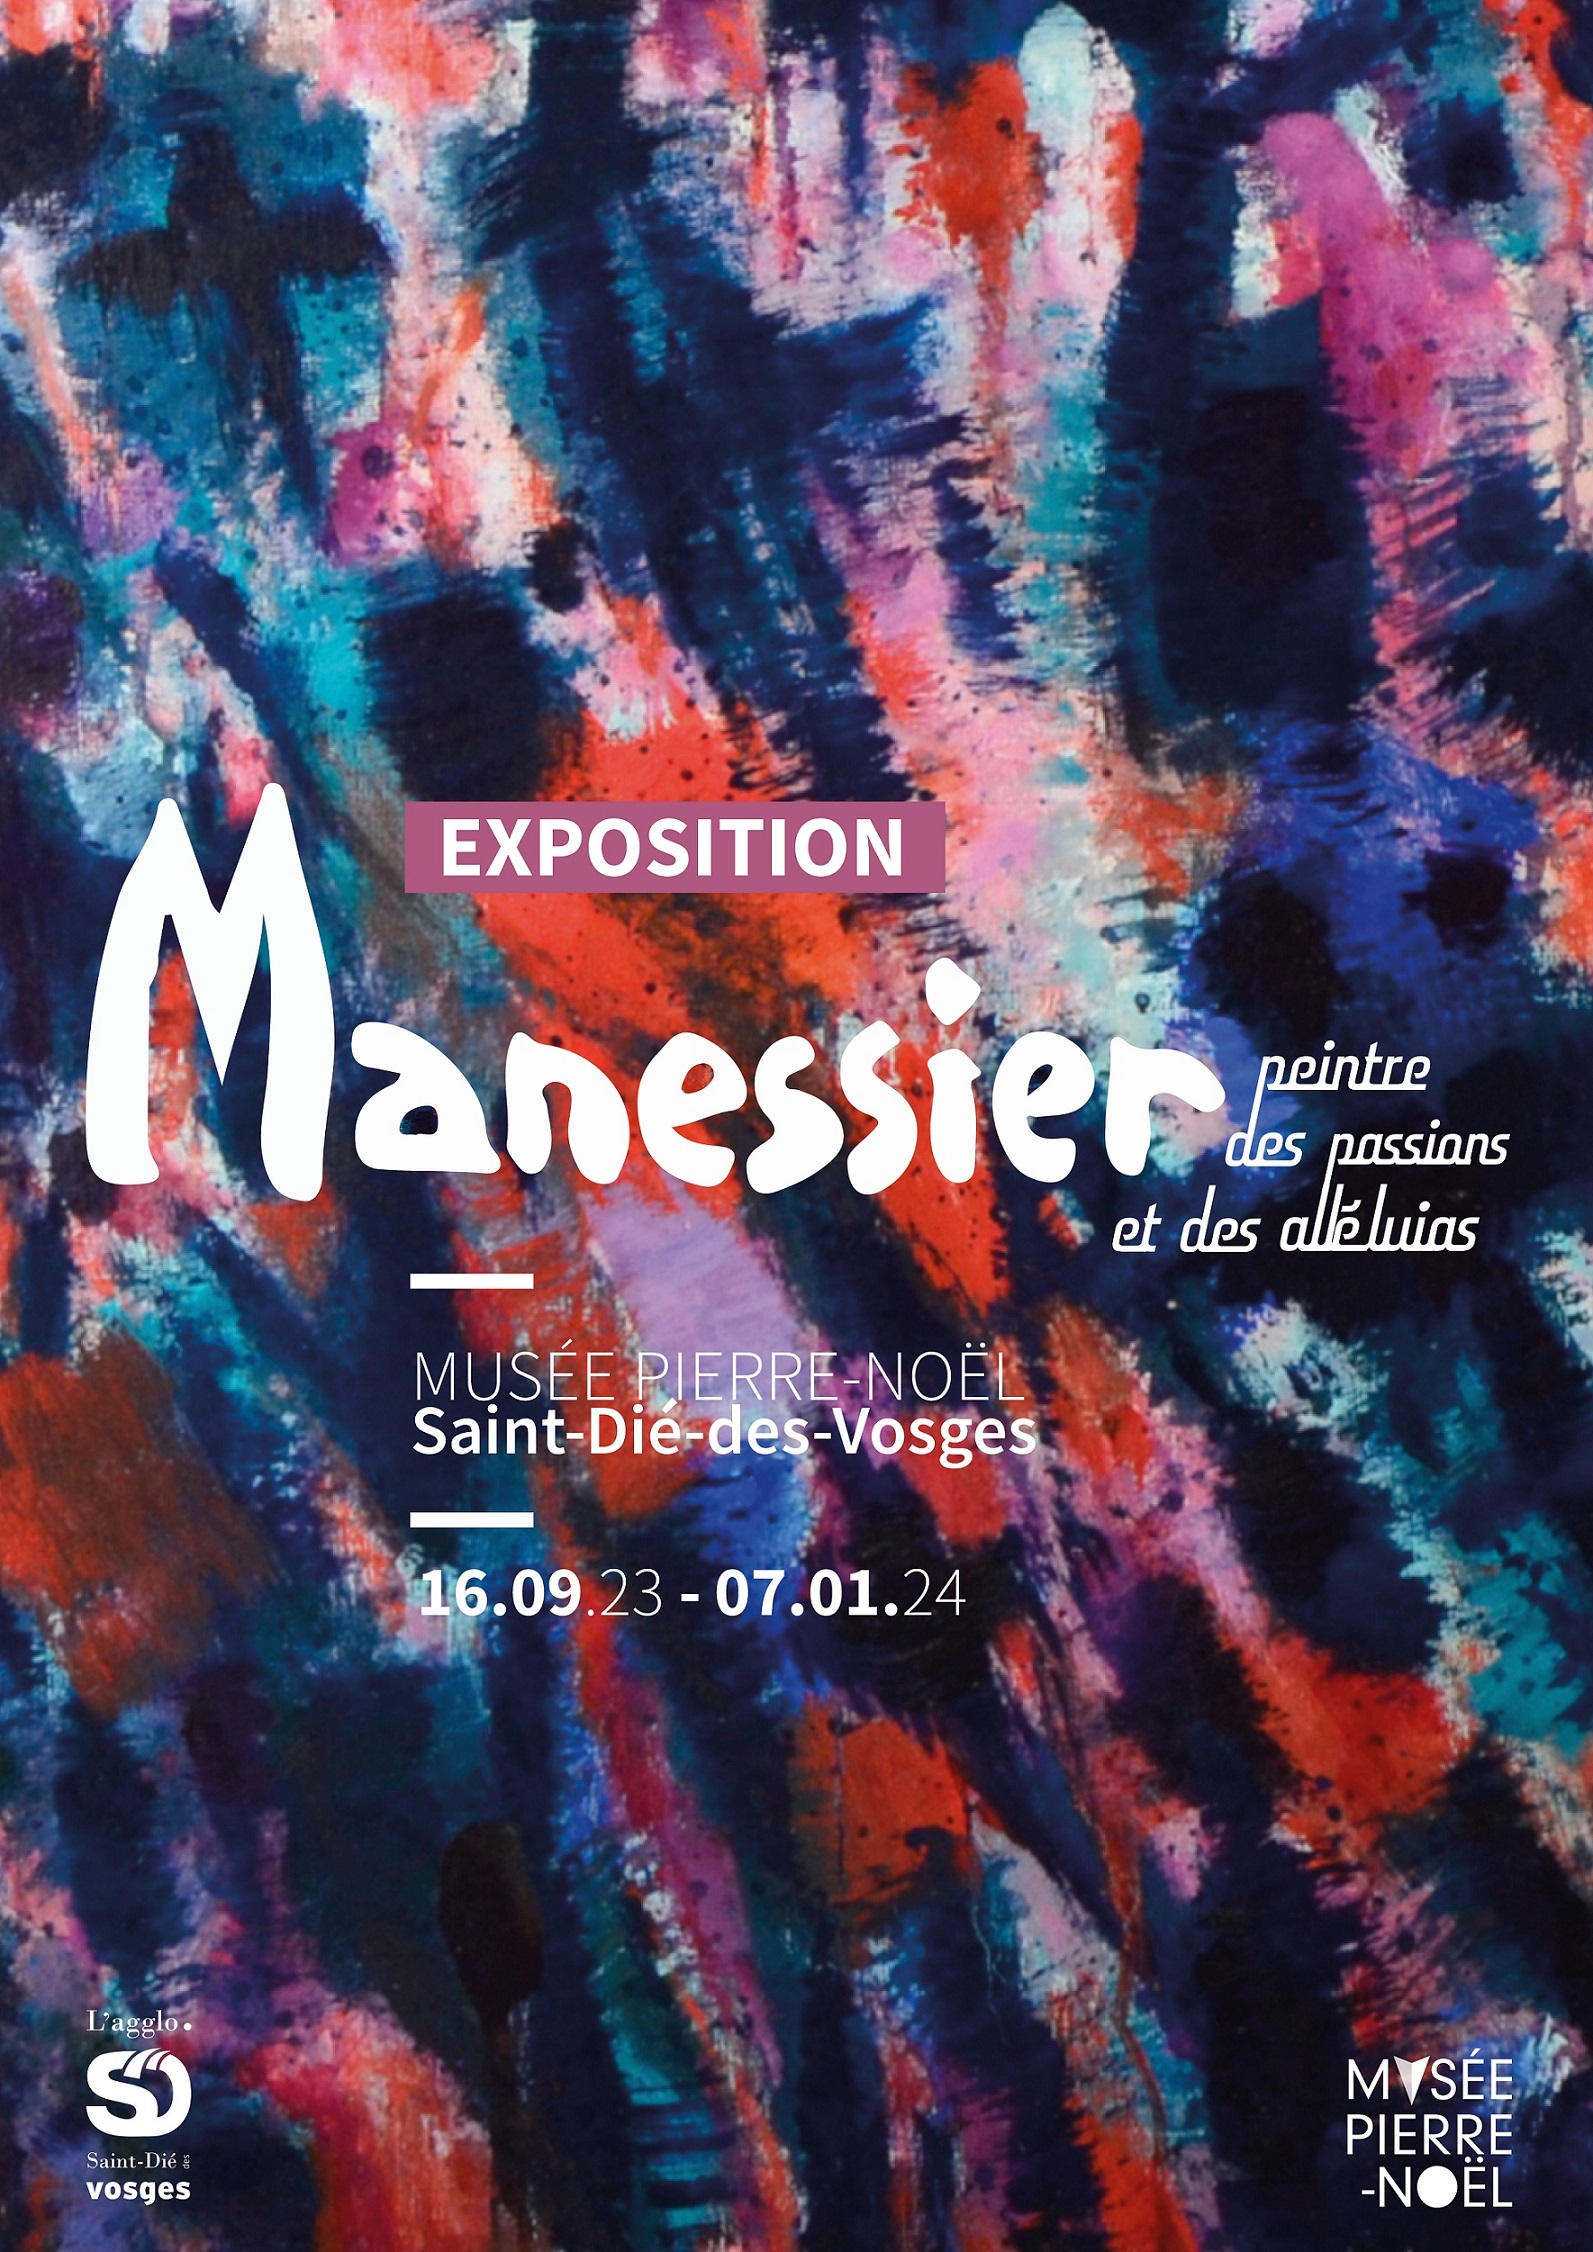 Exposition Manessier_Affiche_Version reduite